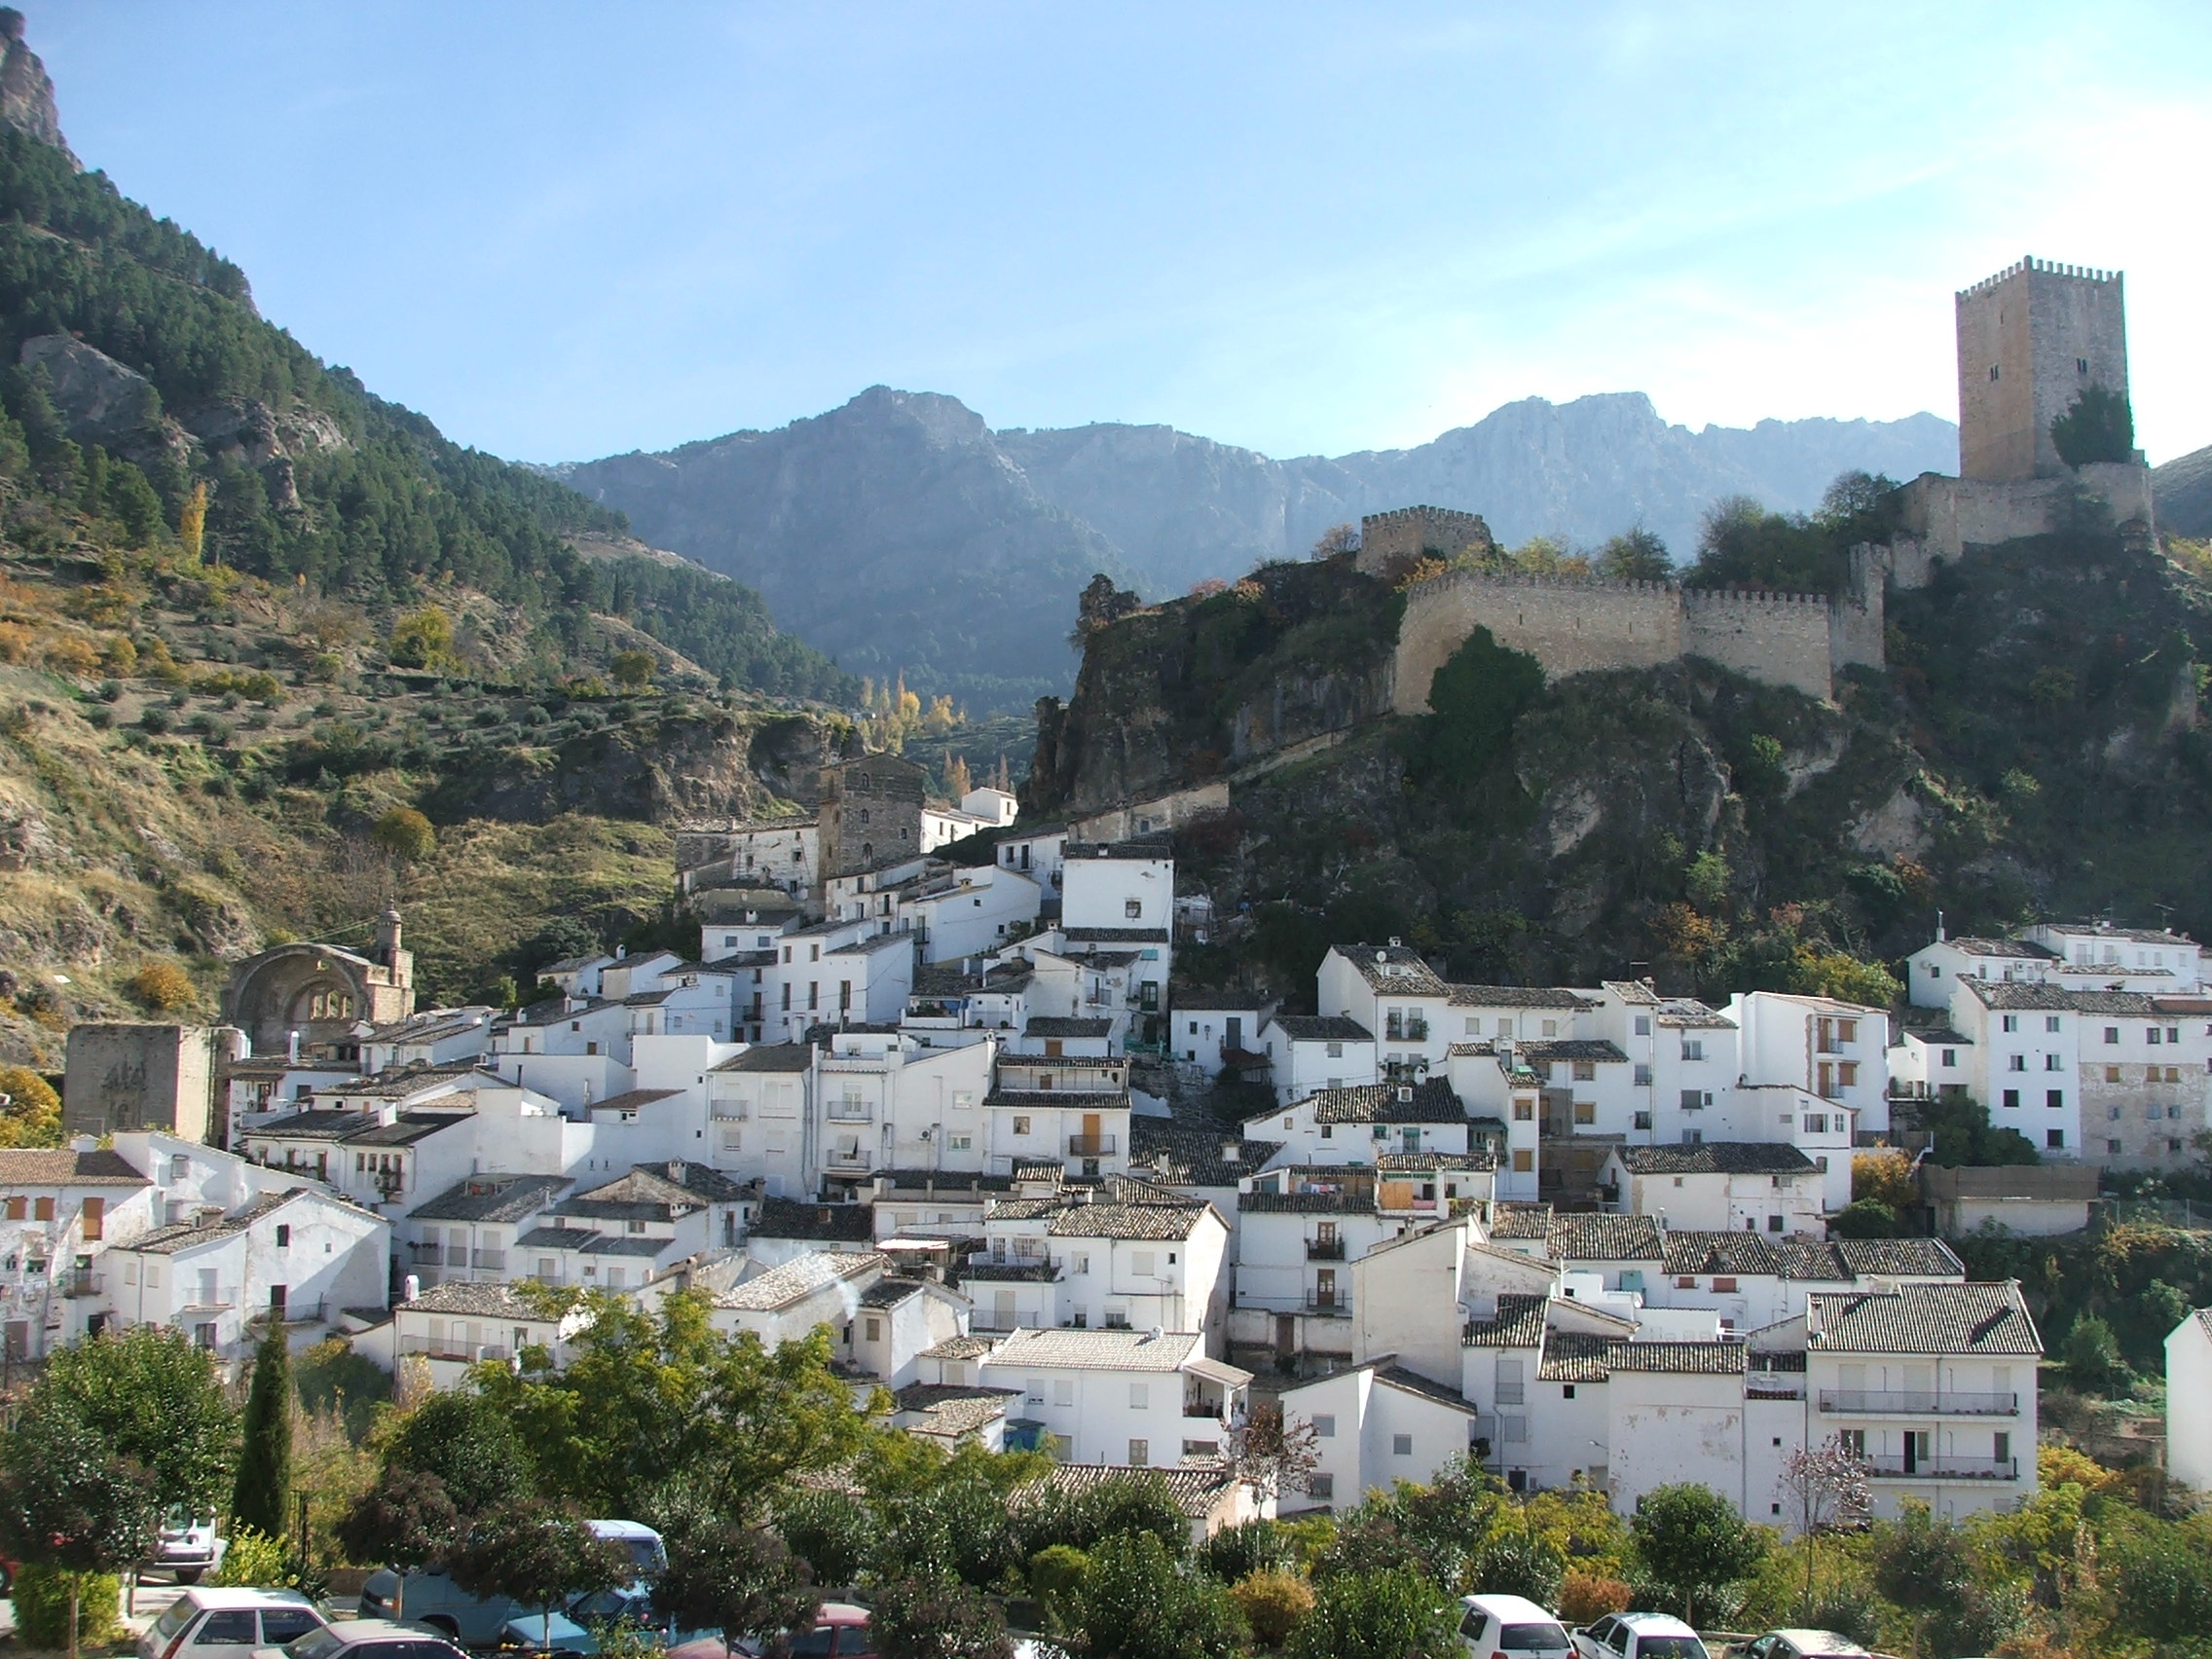 5 recursos naturales para visitar en Jaén